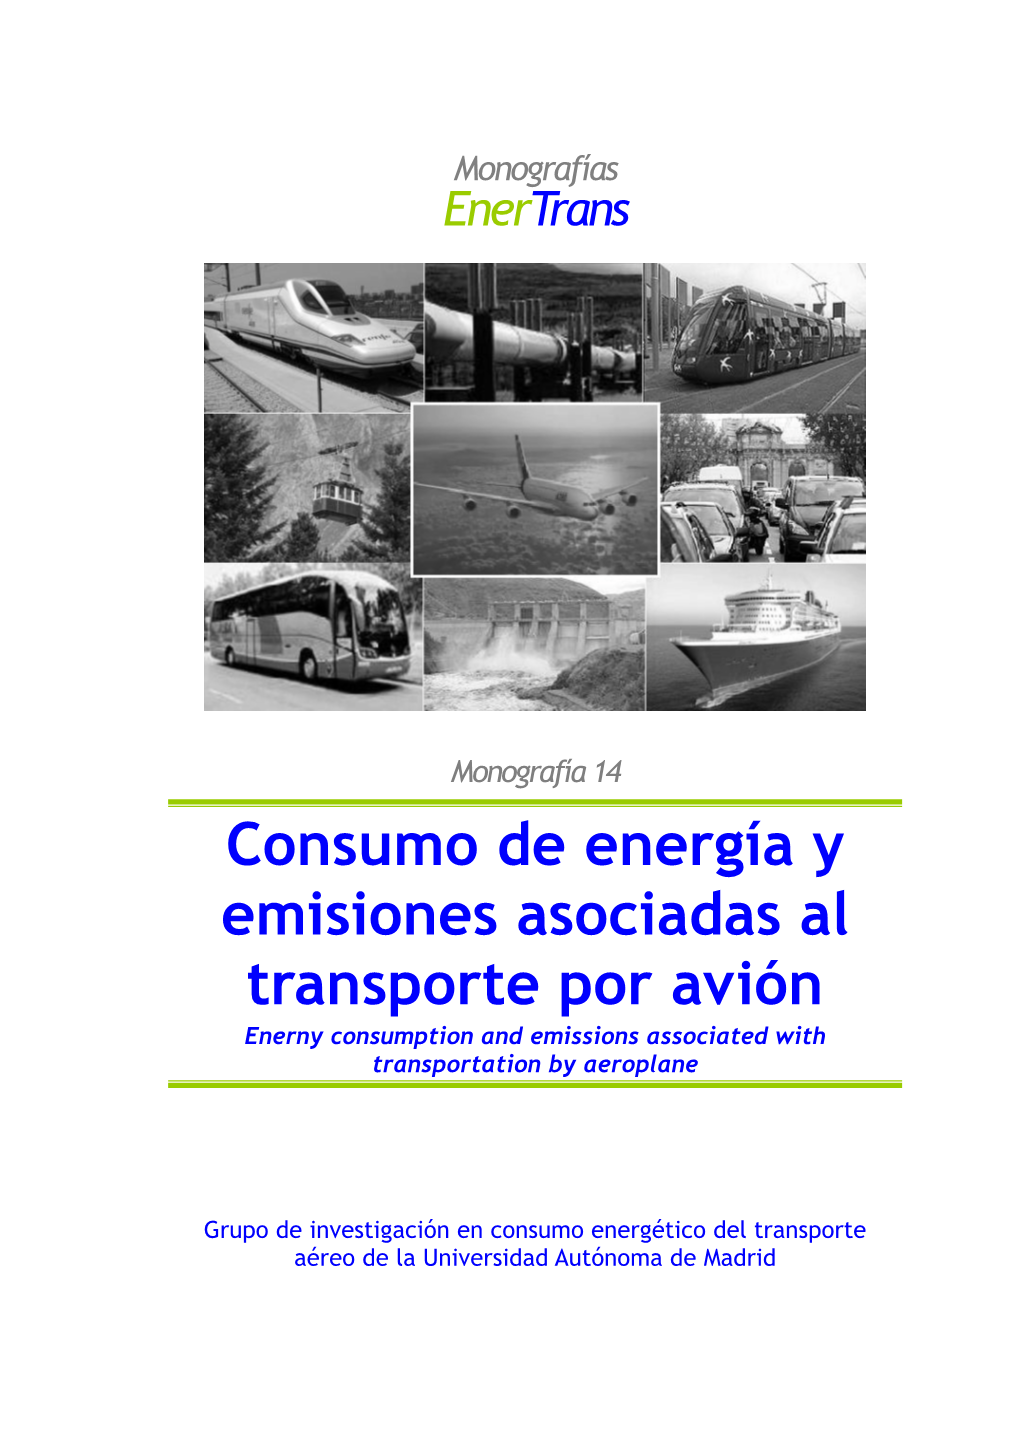 Consumo De Energía Y Emisiones Asociadas Al Transporte Por Avión Enerny Consumption and Emissions Associated with Transportation by Aeroplane